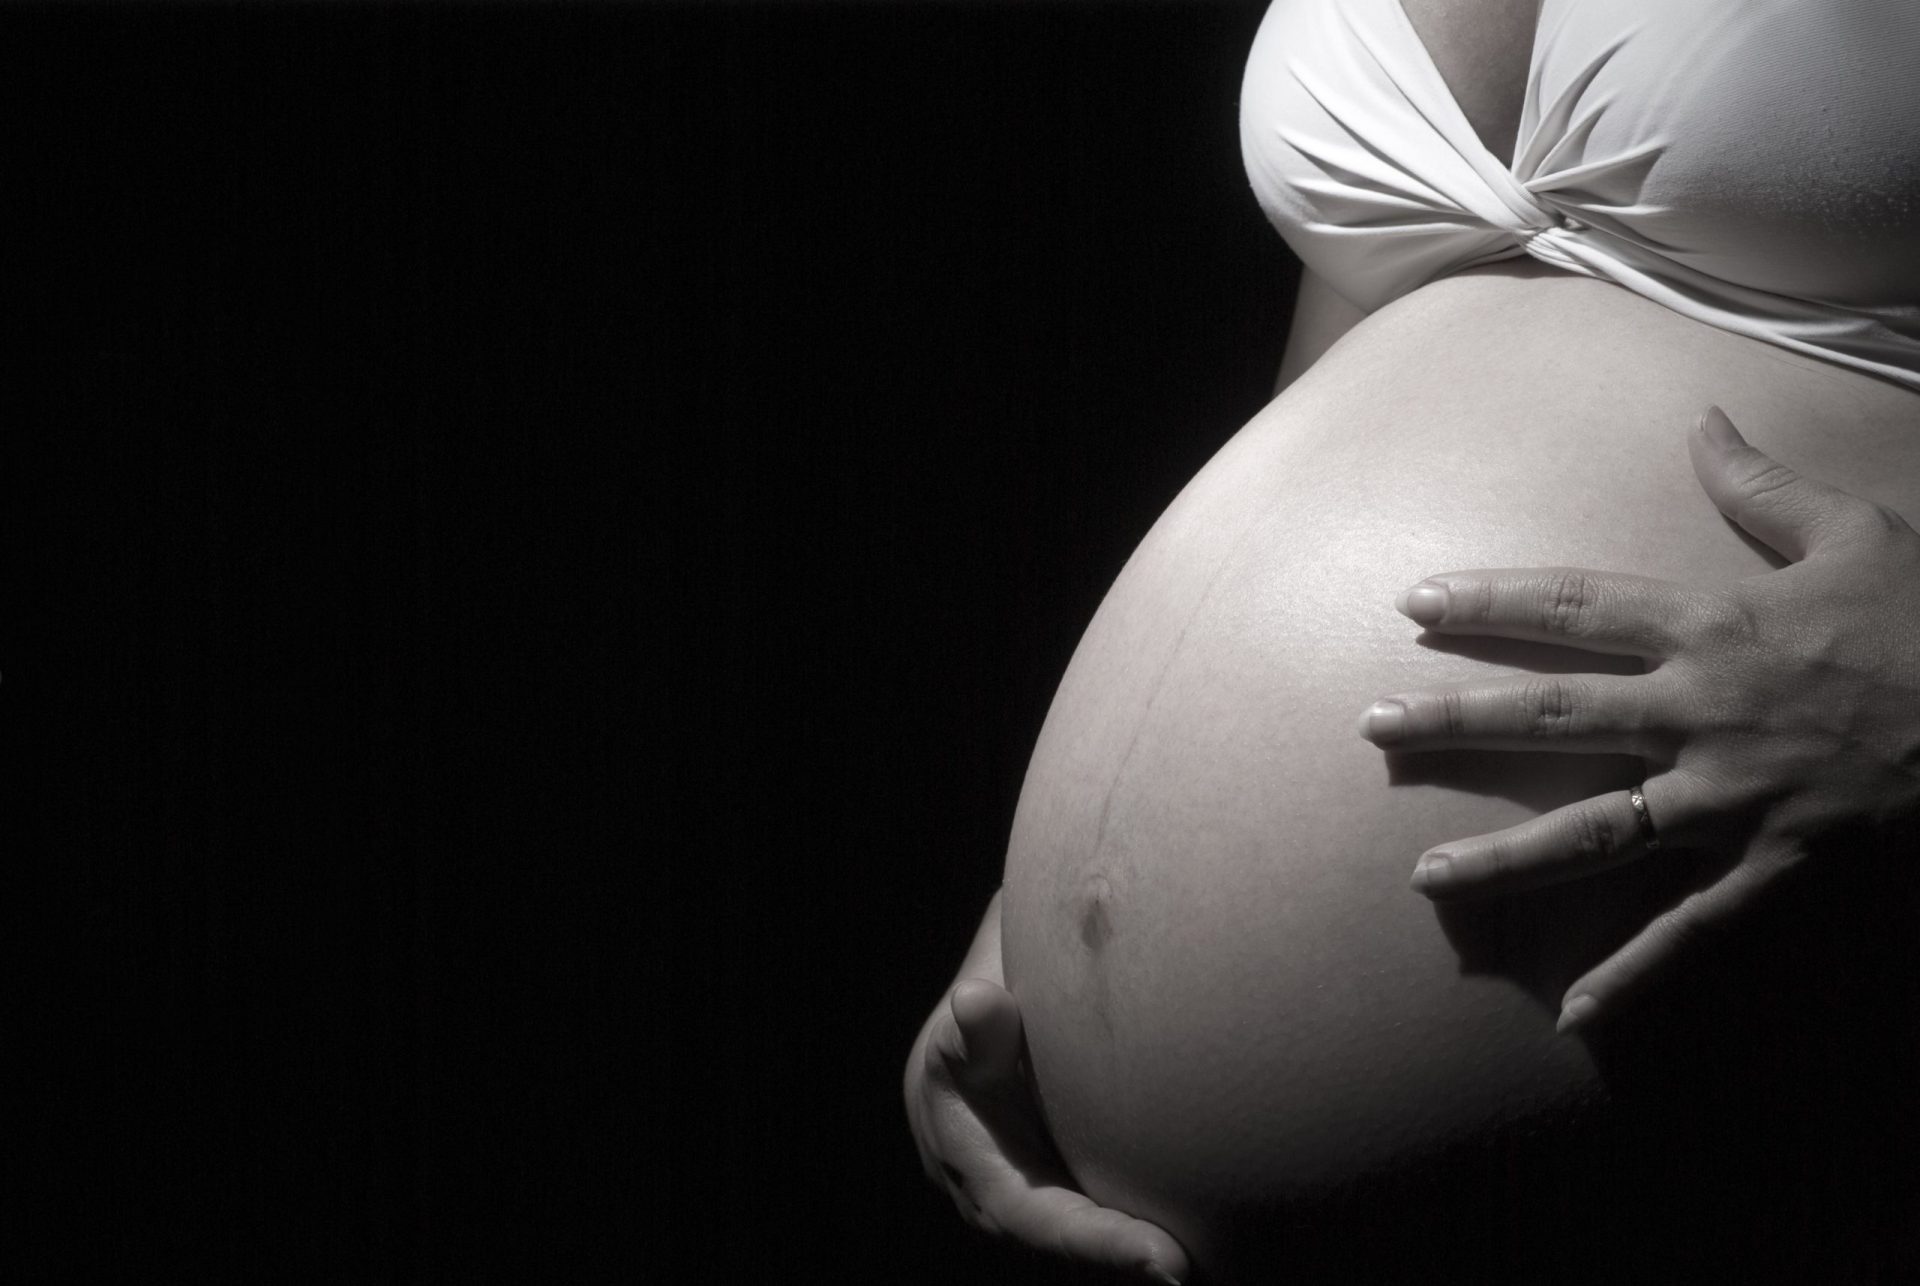 Agrediu e ameaçou companheira grávida de 35 semanas em Guimarães